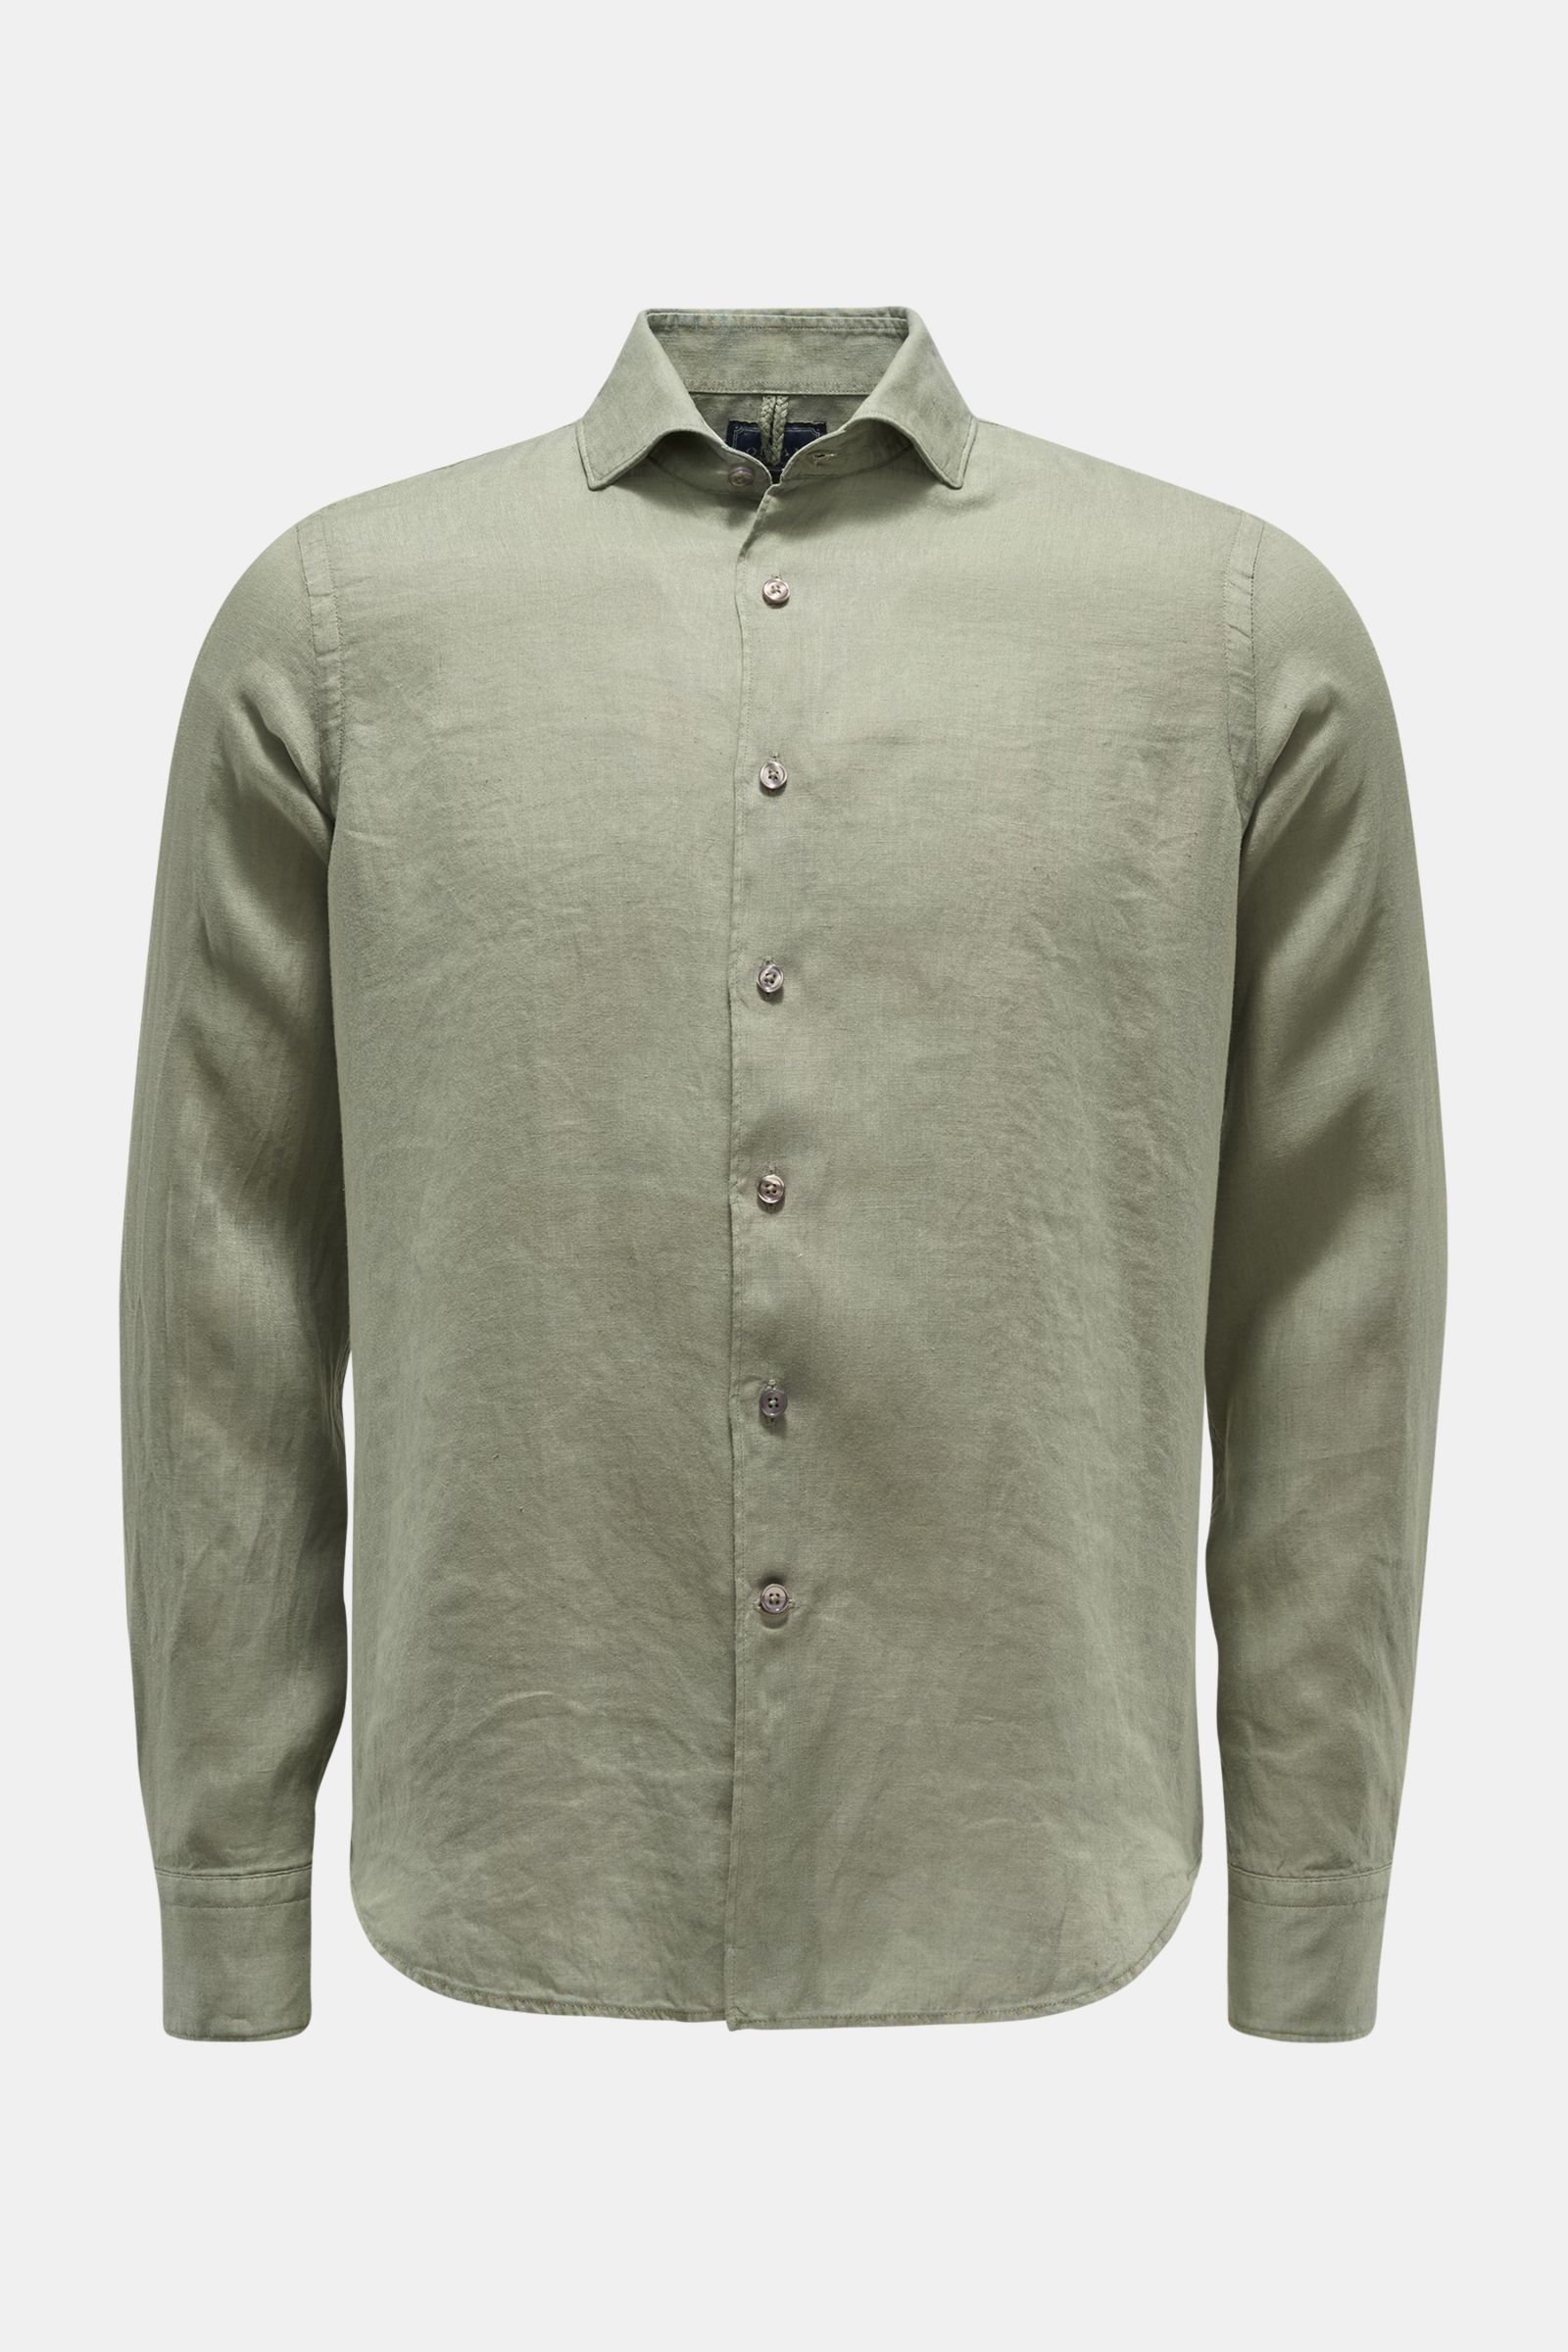 Casual shirt shark collar grey-green